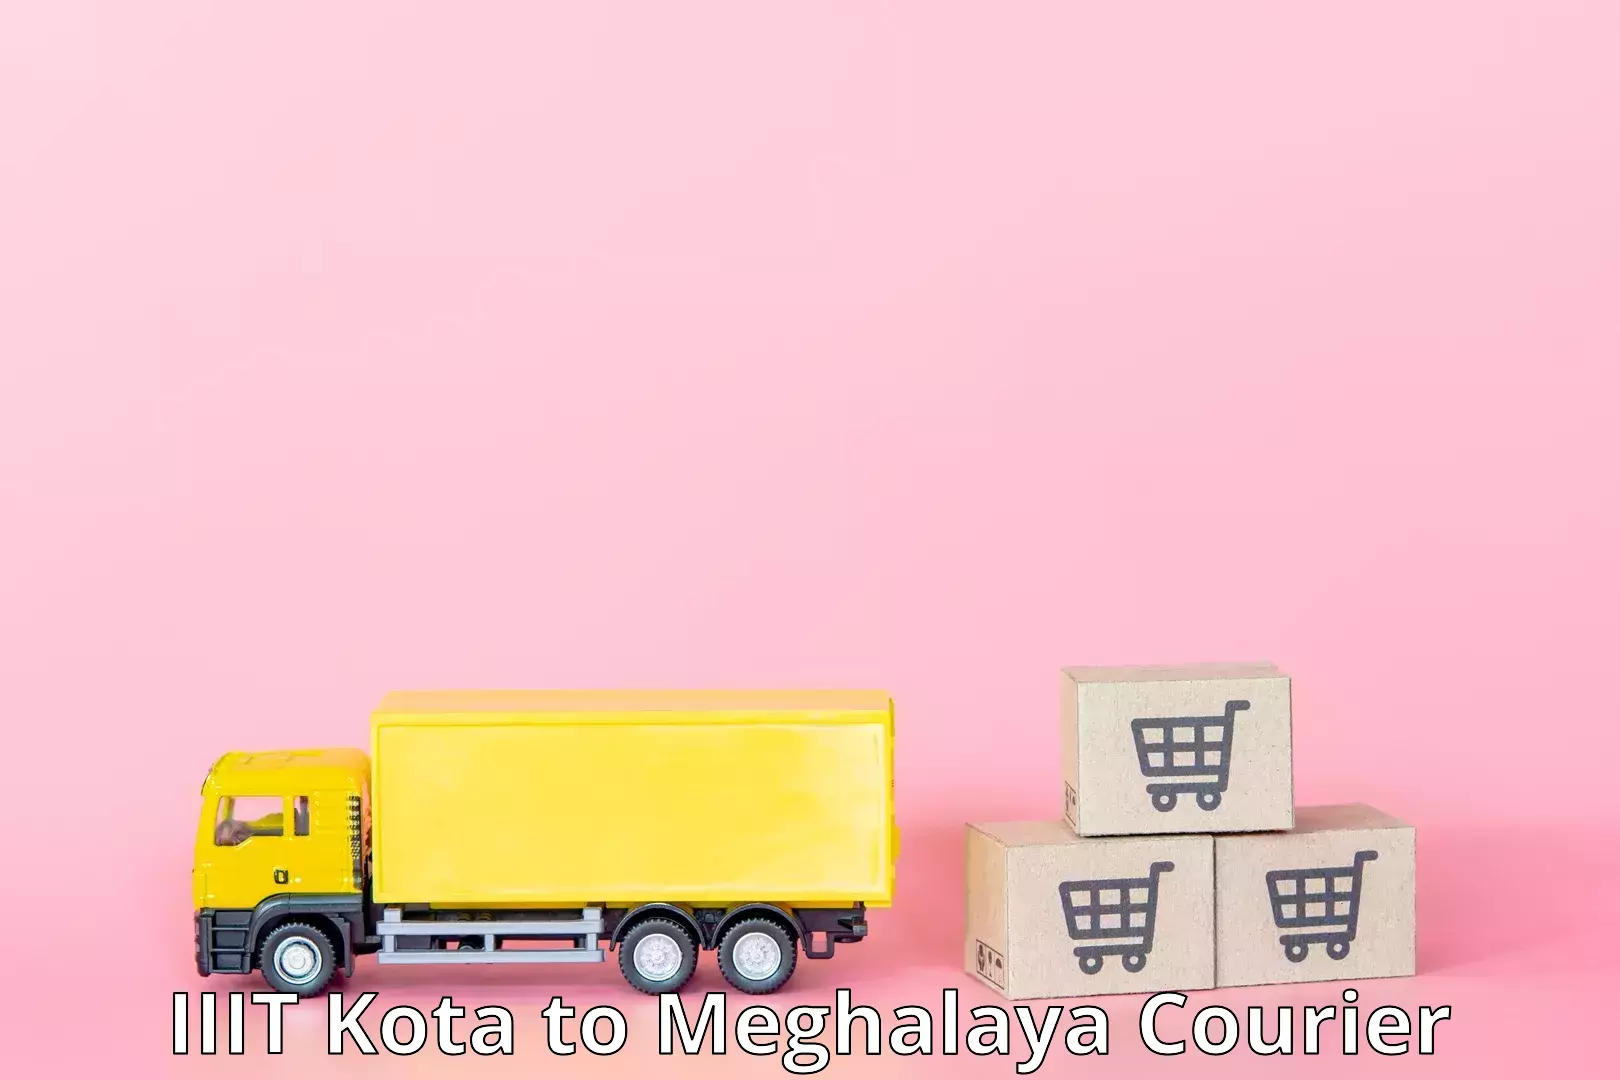 Nationwide courier service IIIT Kota to Meghalaya